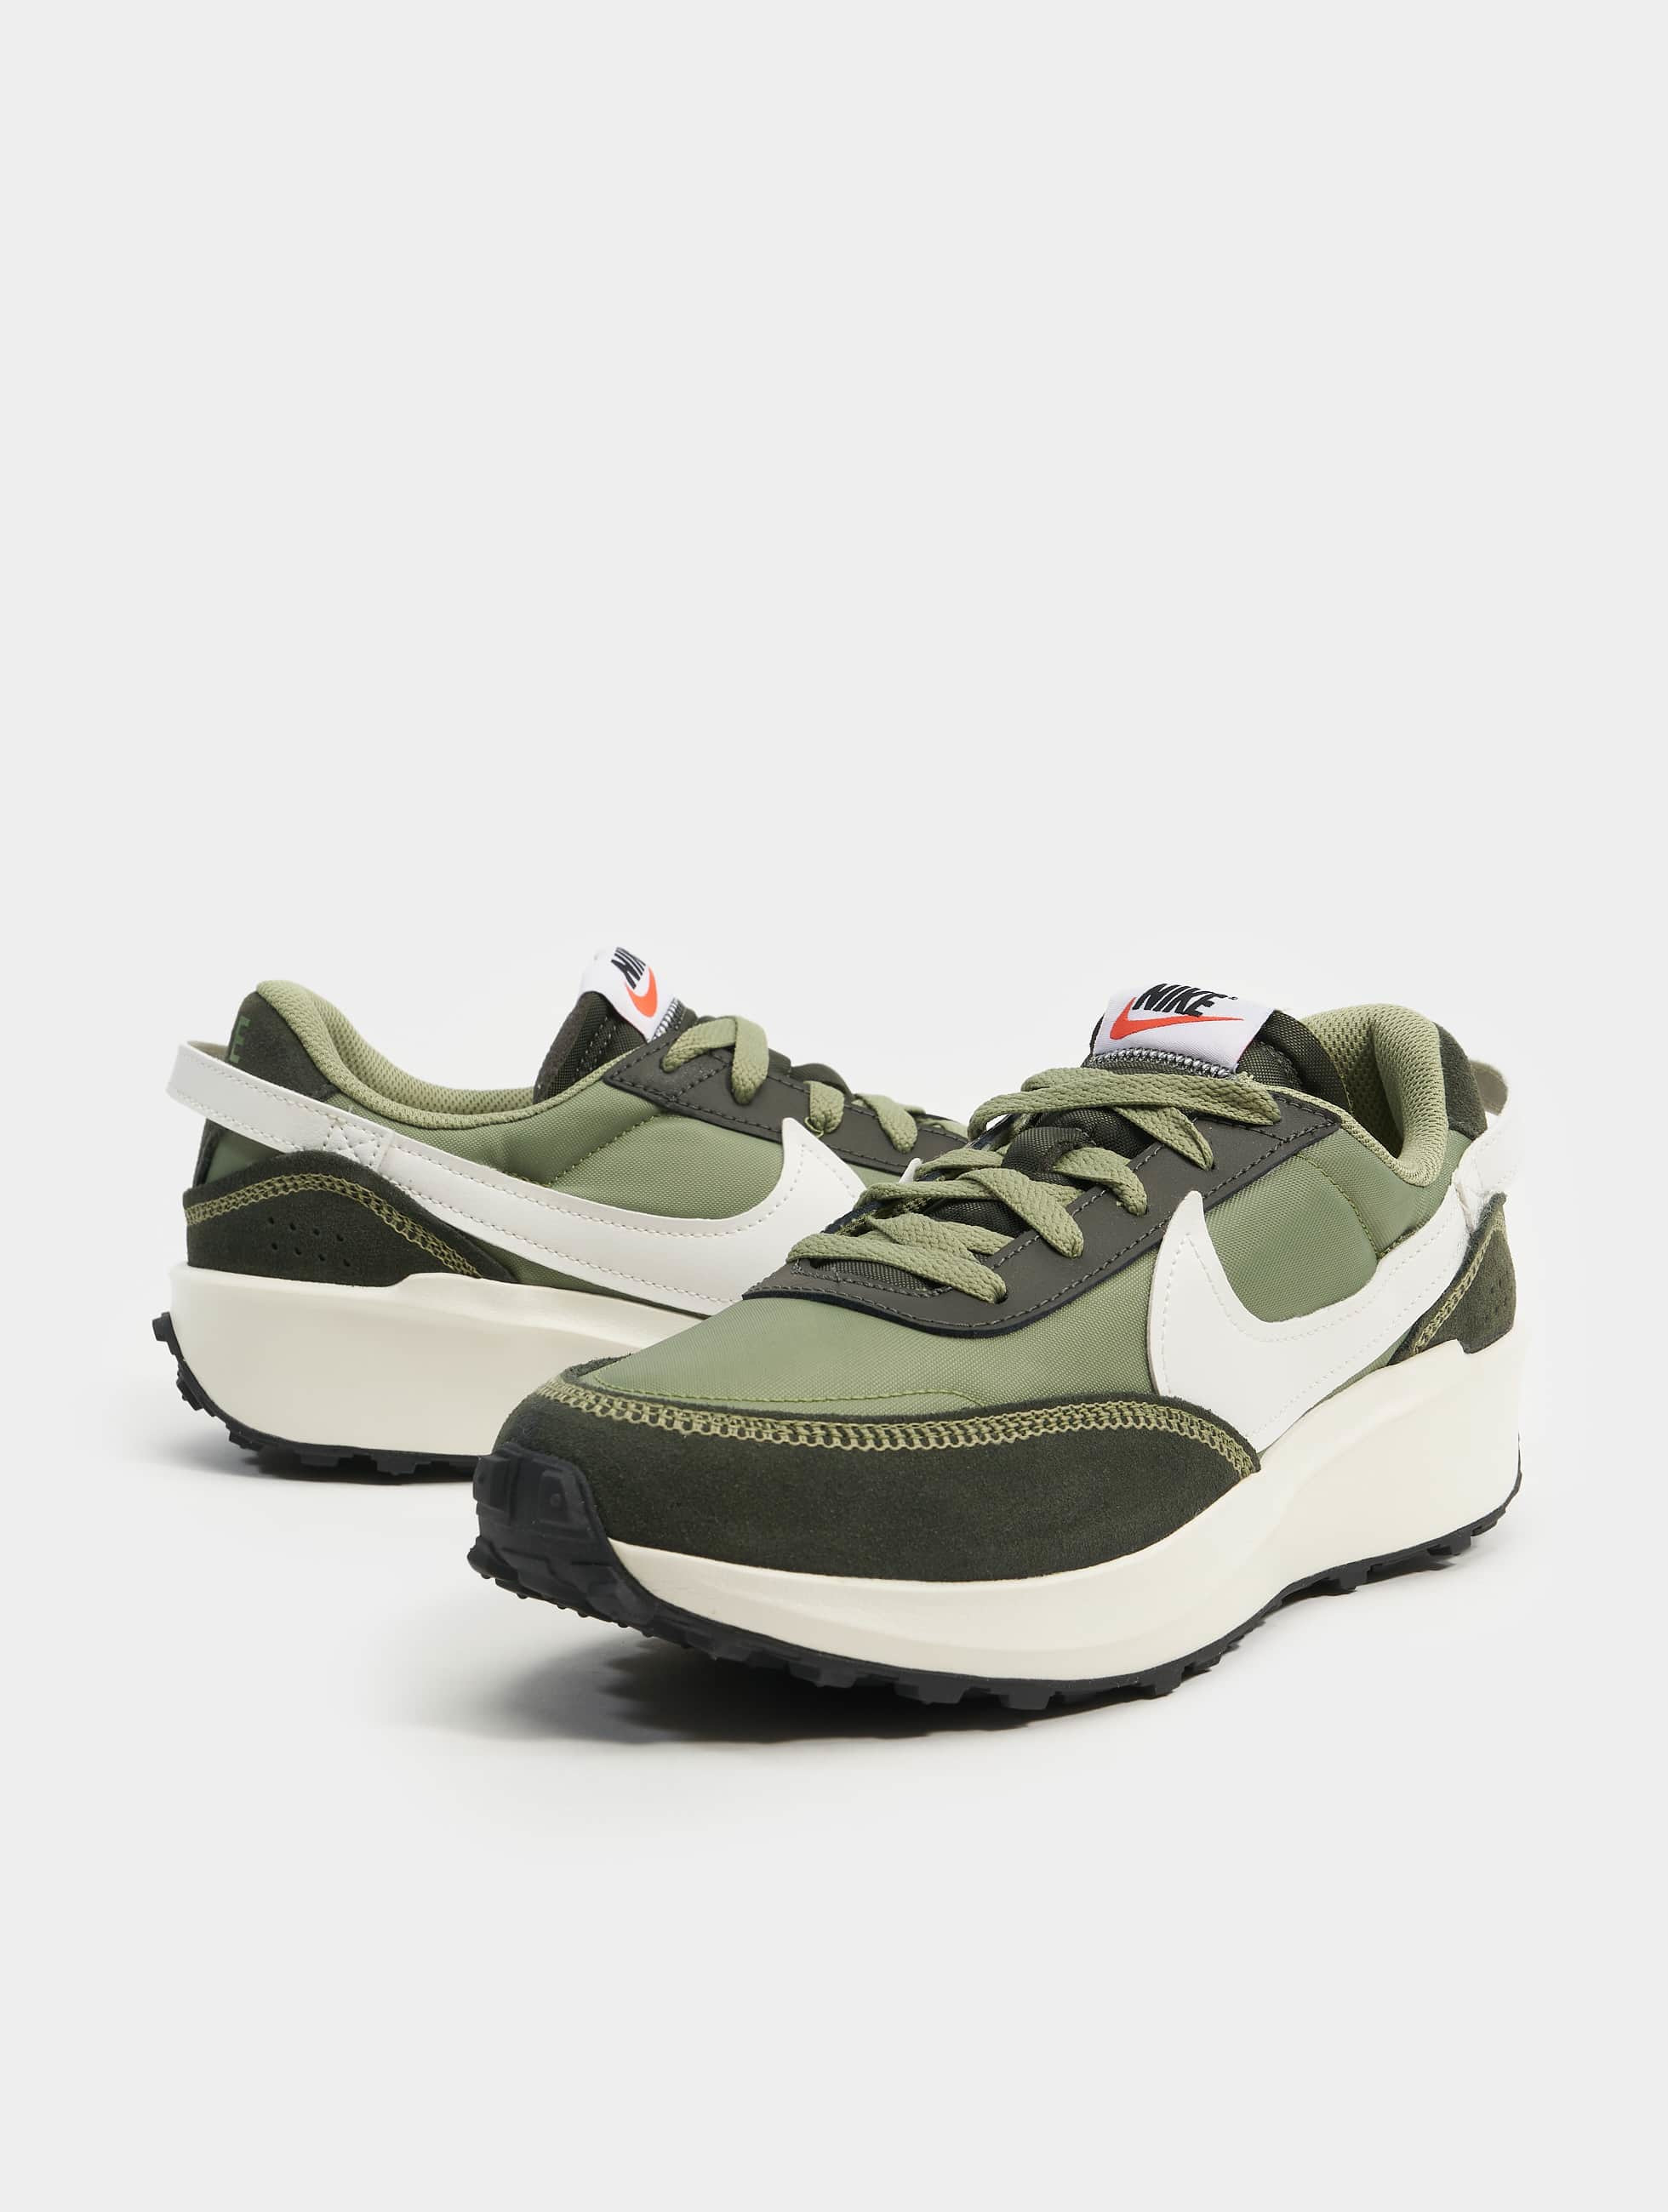 Nike schoen / sneaker Waffle groen 979624